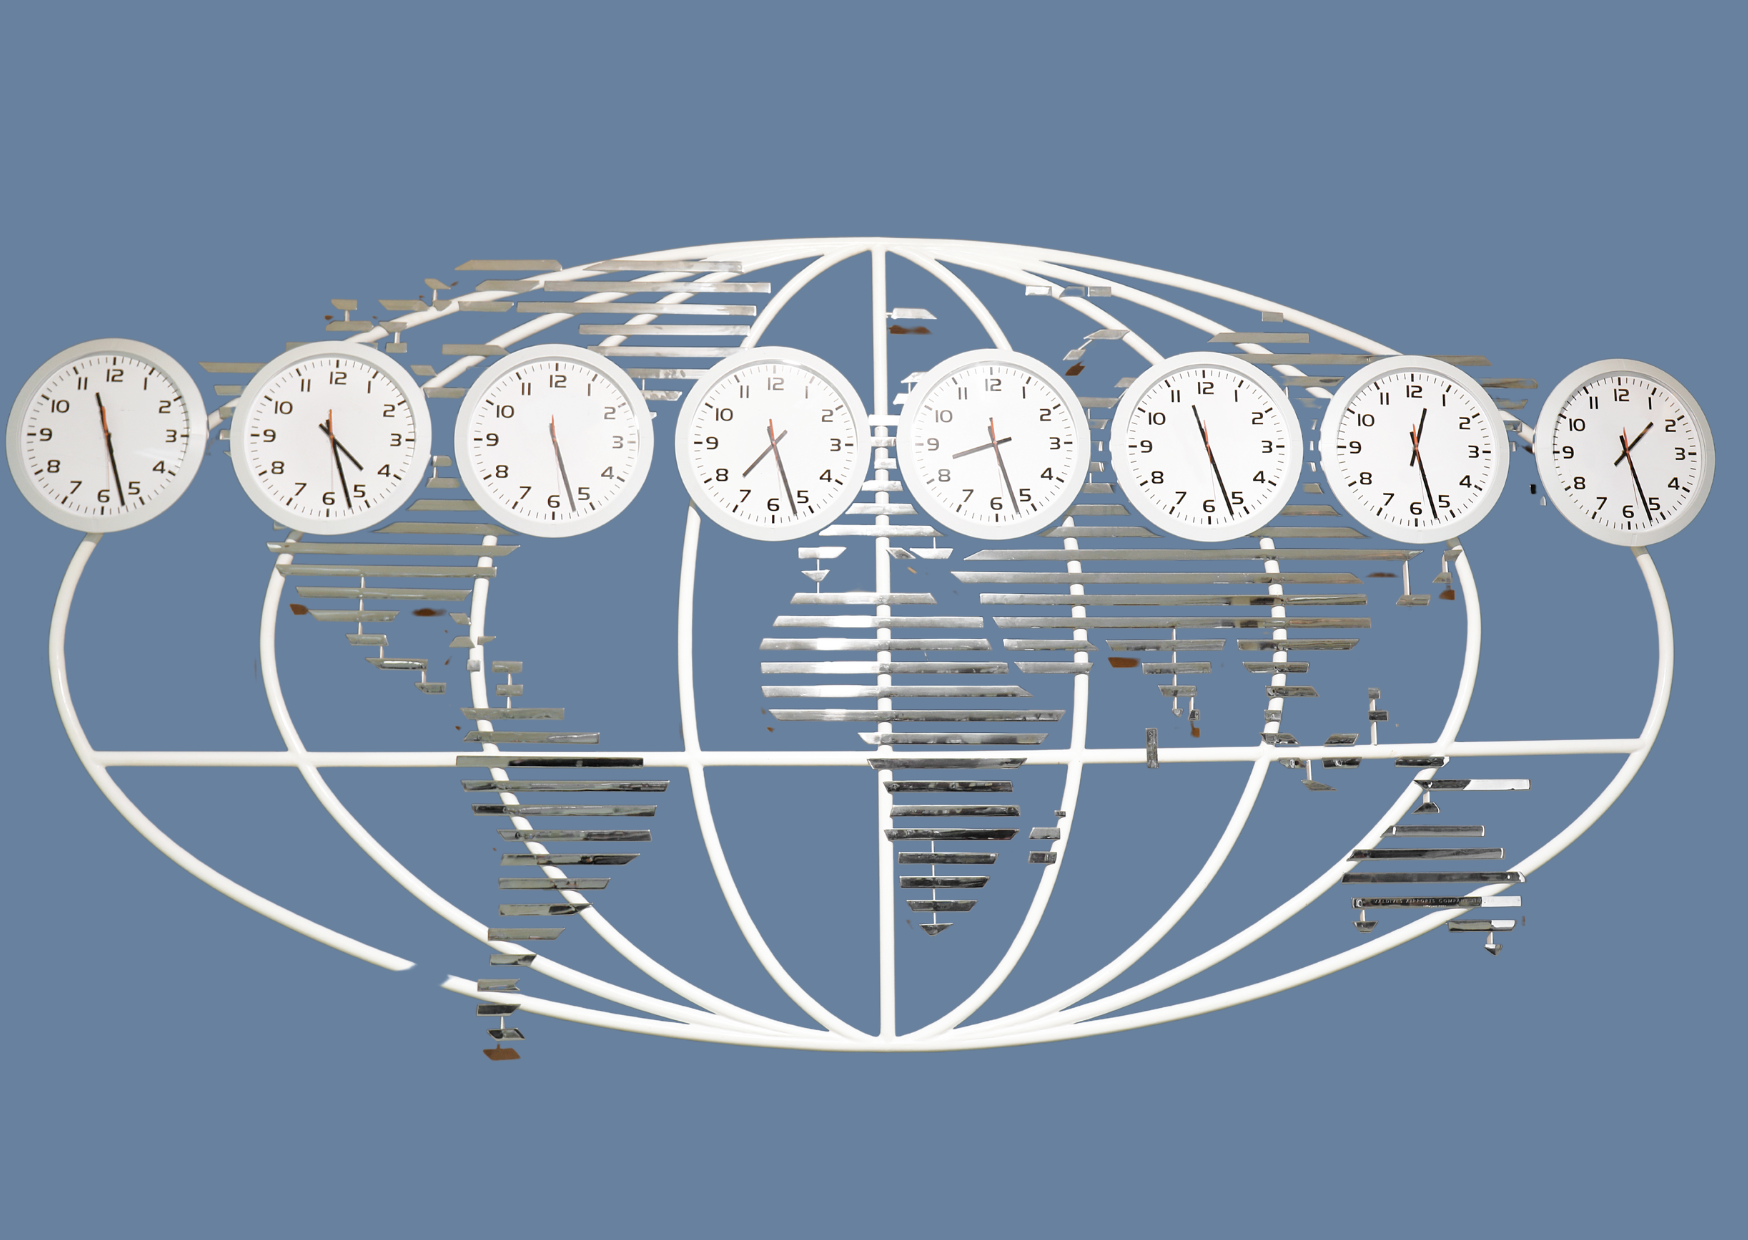 Verdens tidssoner og ulike klokkeslett